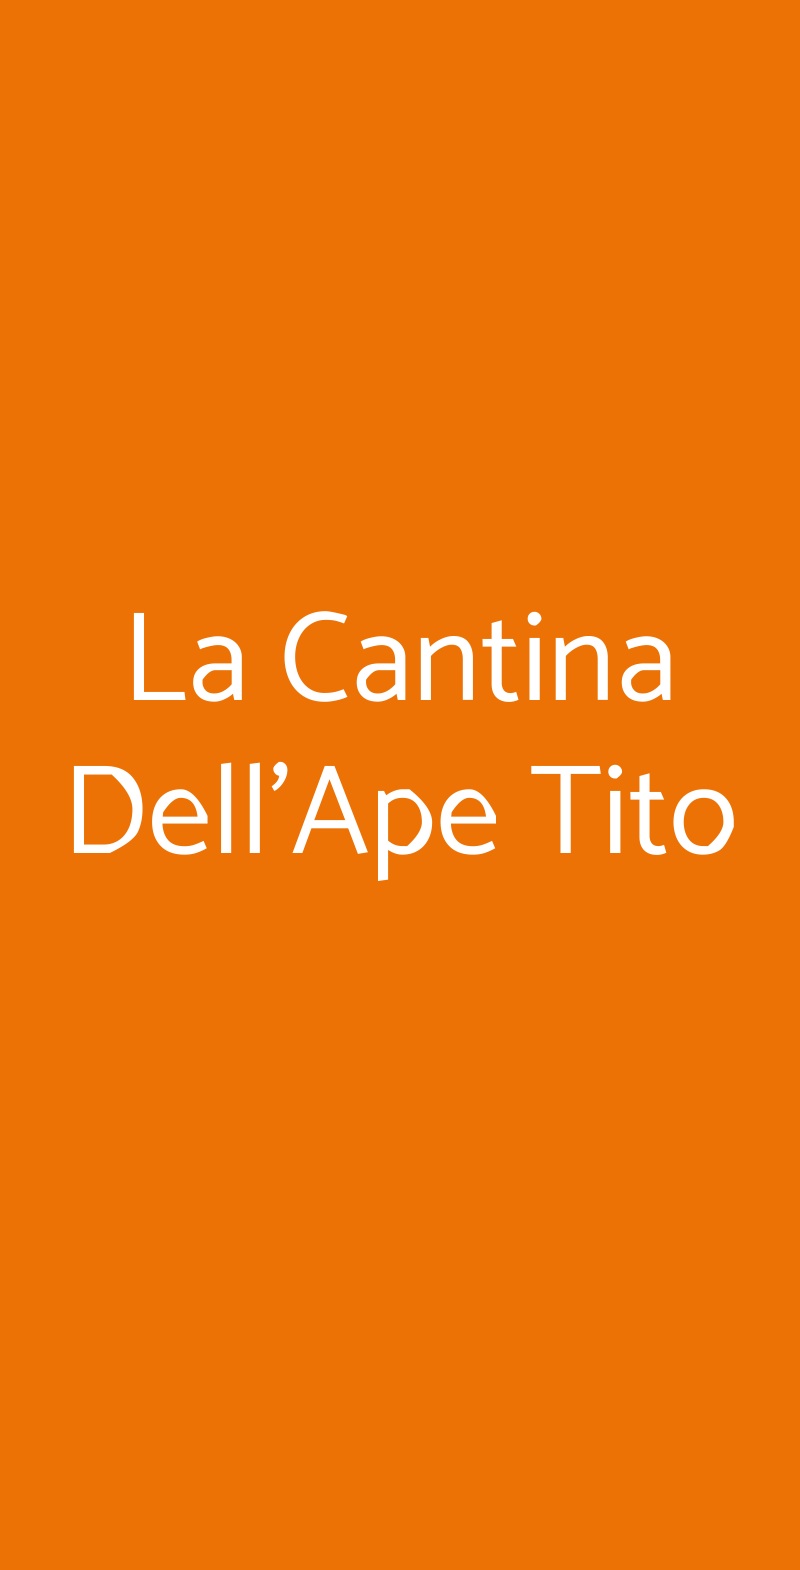 La Cantina Dell'Ape Tito Genova menù 1 pagina